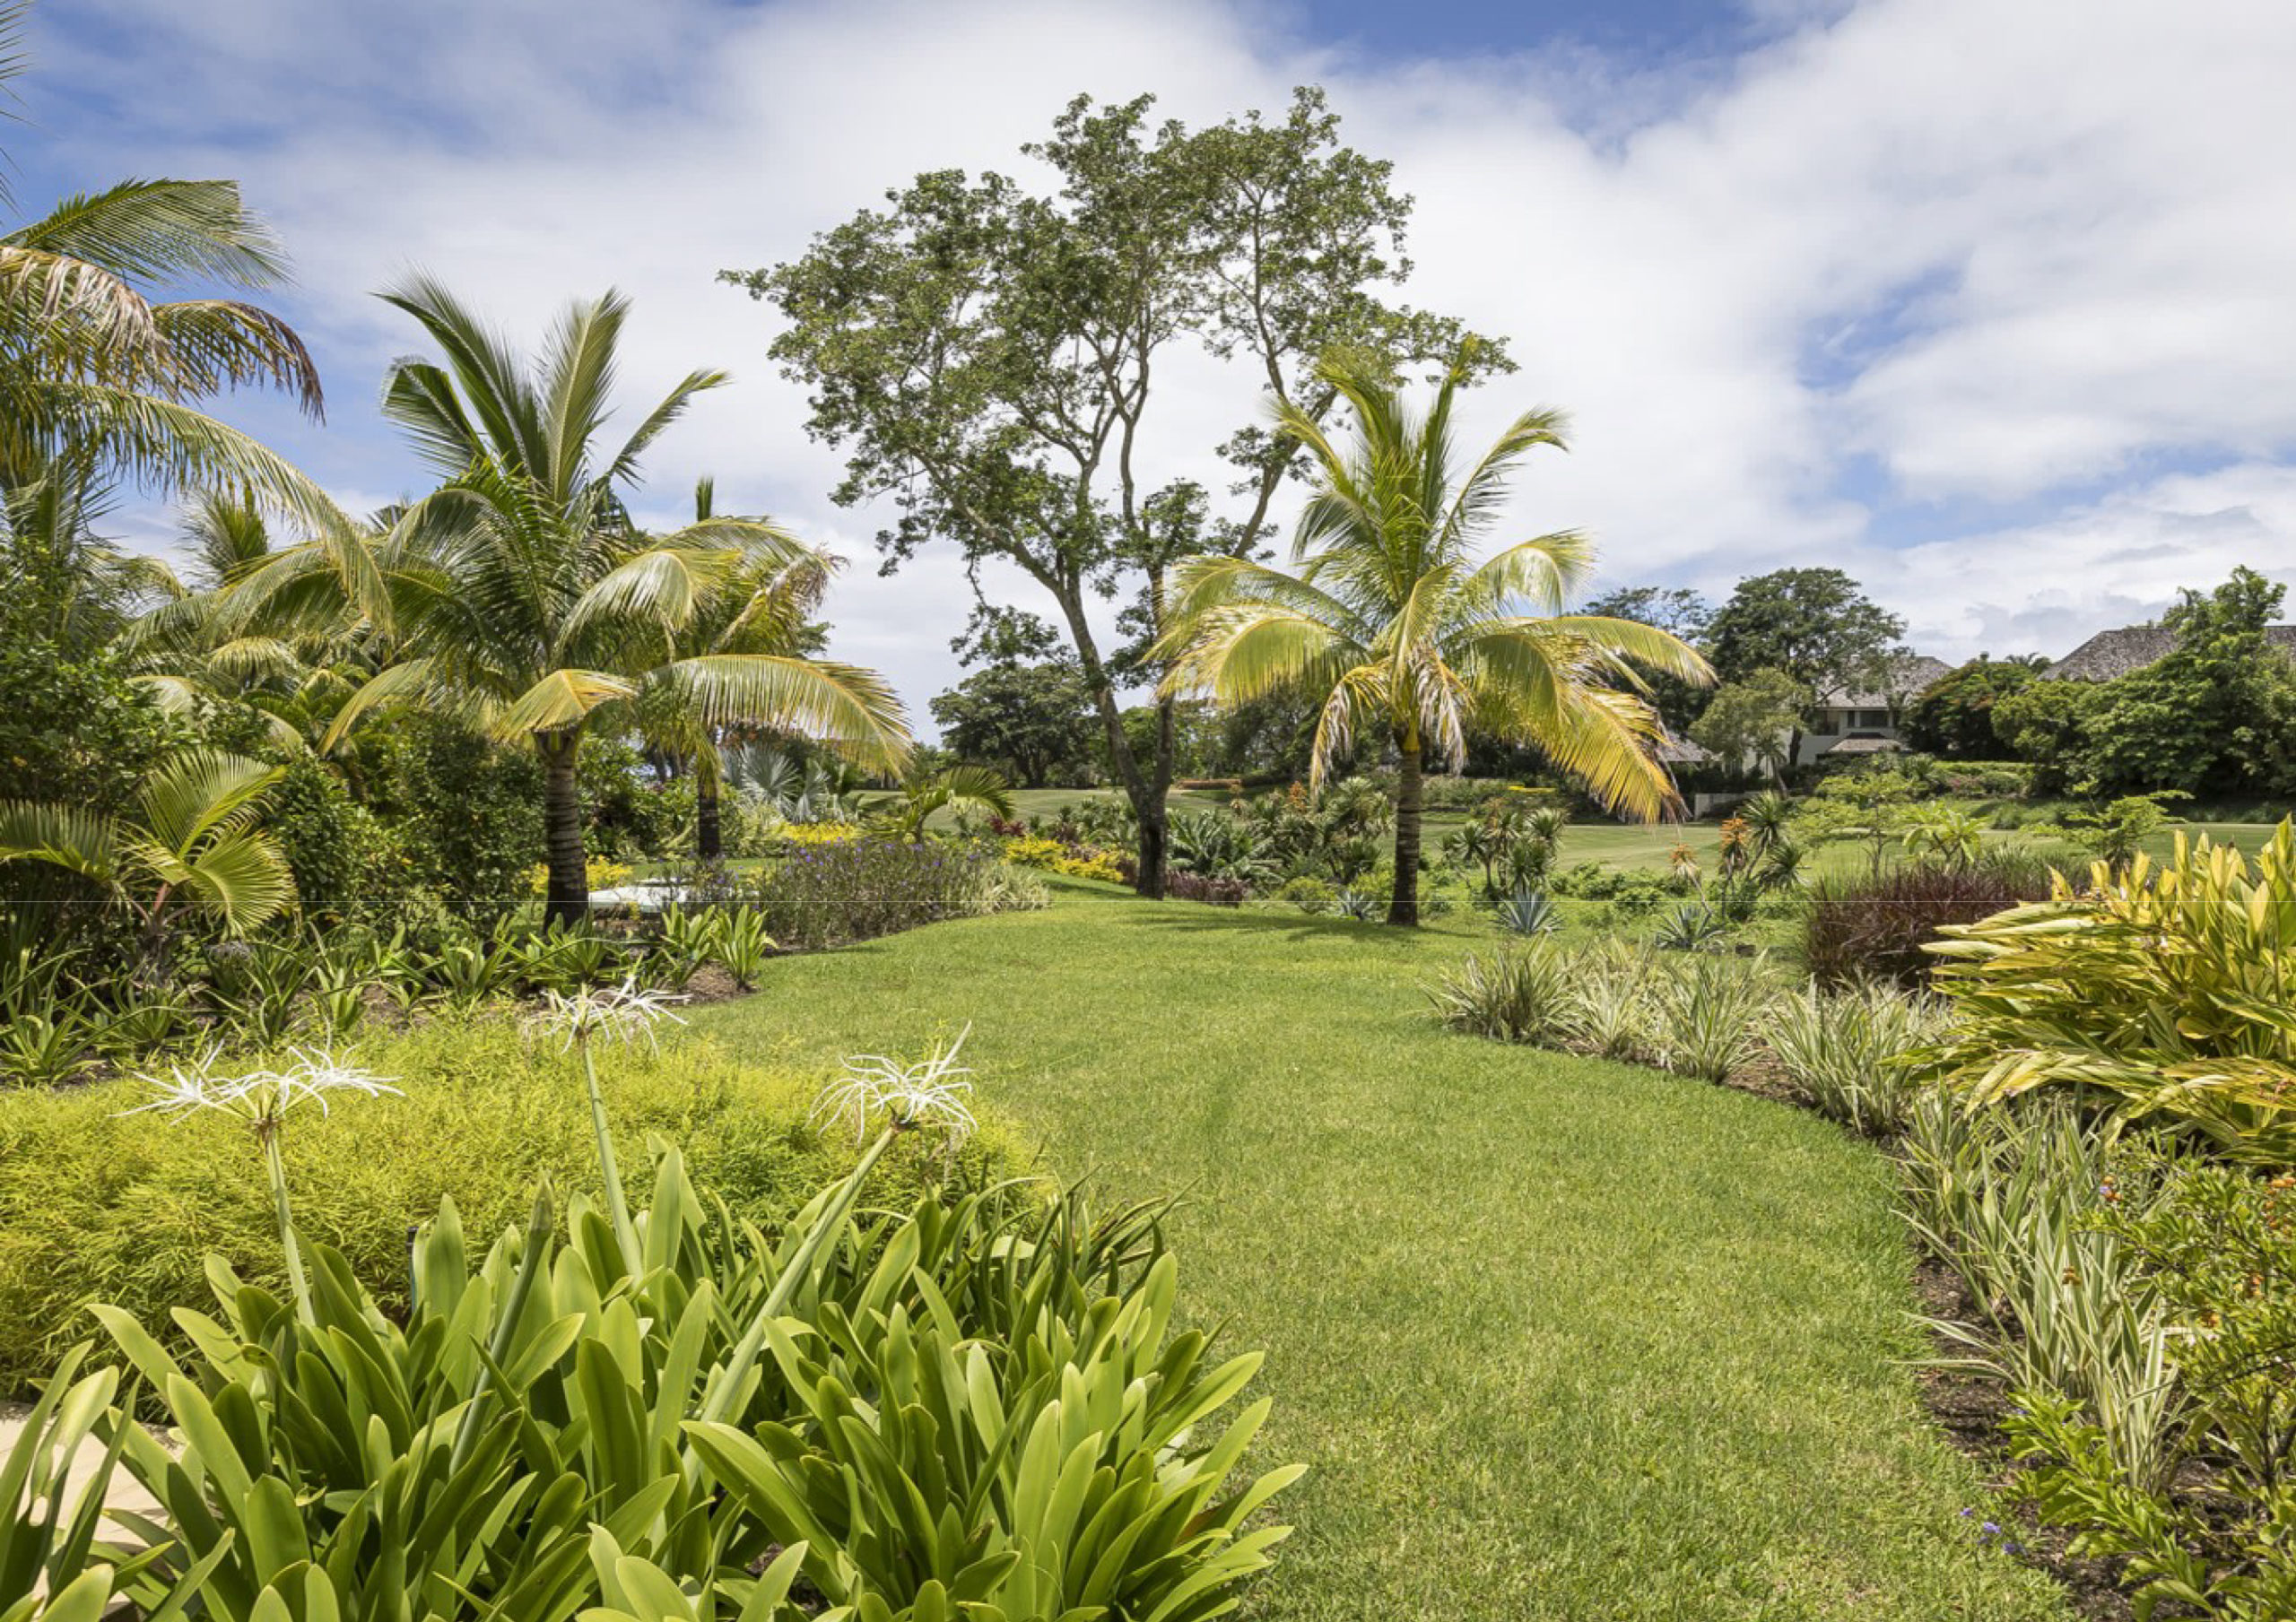 Villa jumelée IRS 3 chambres à vendre - Vue sur le golf et la mer - île Maurice